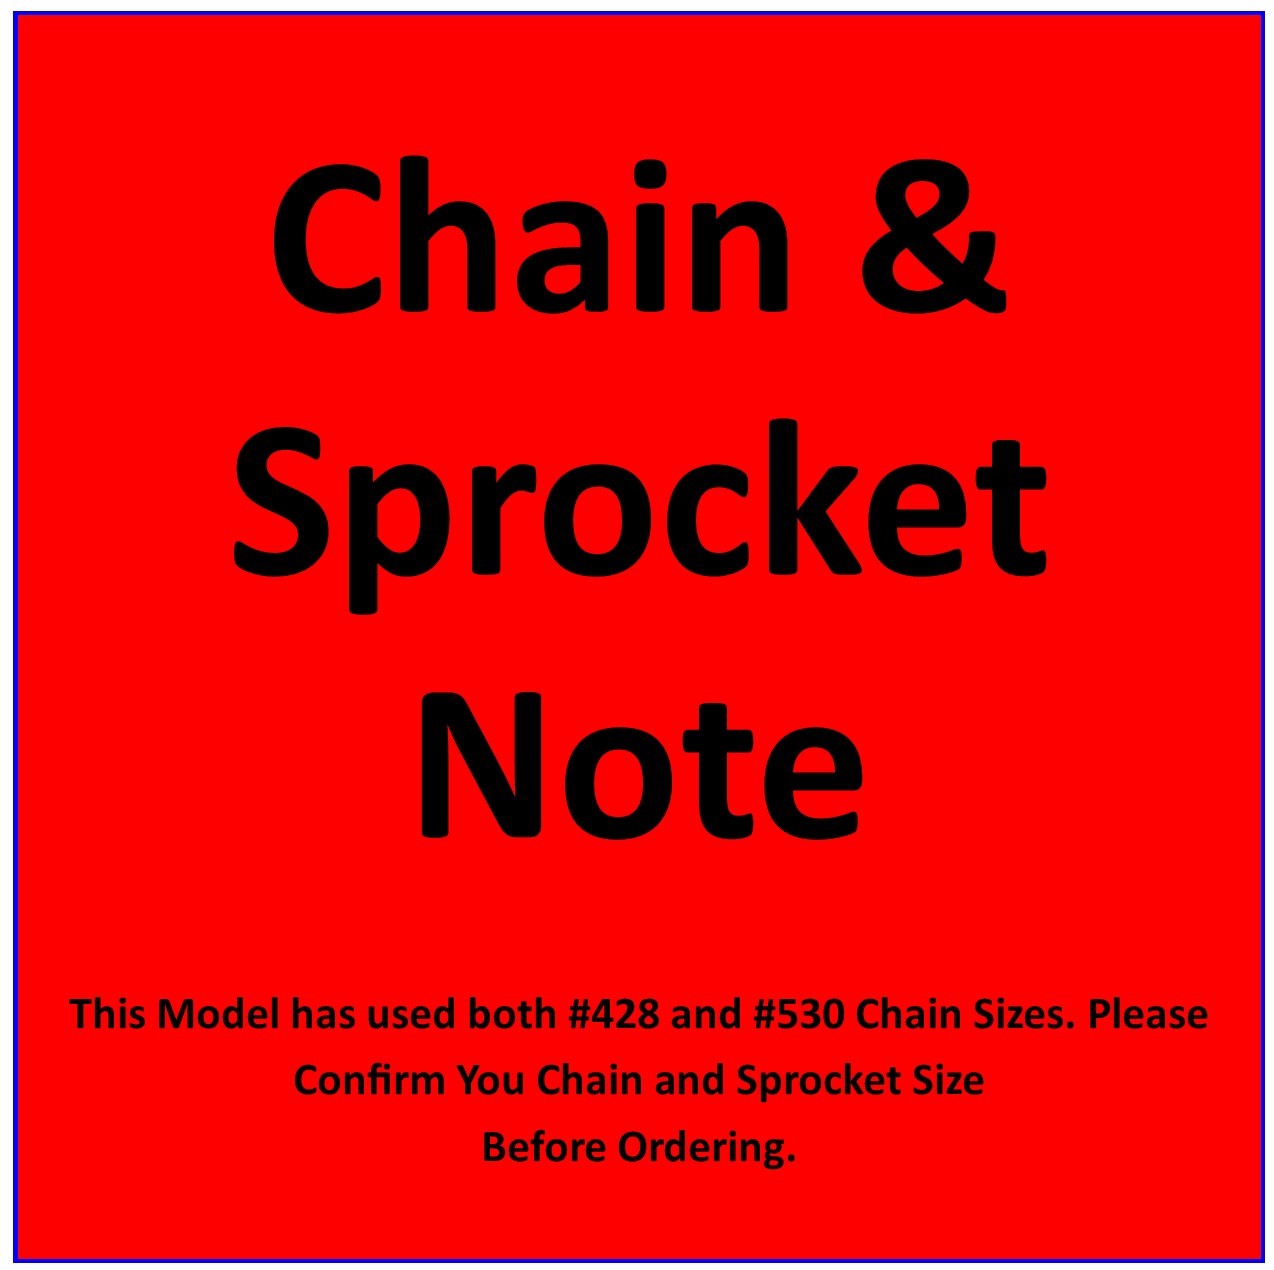 Chain & Sprocket Note